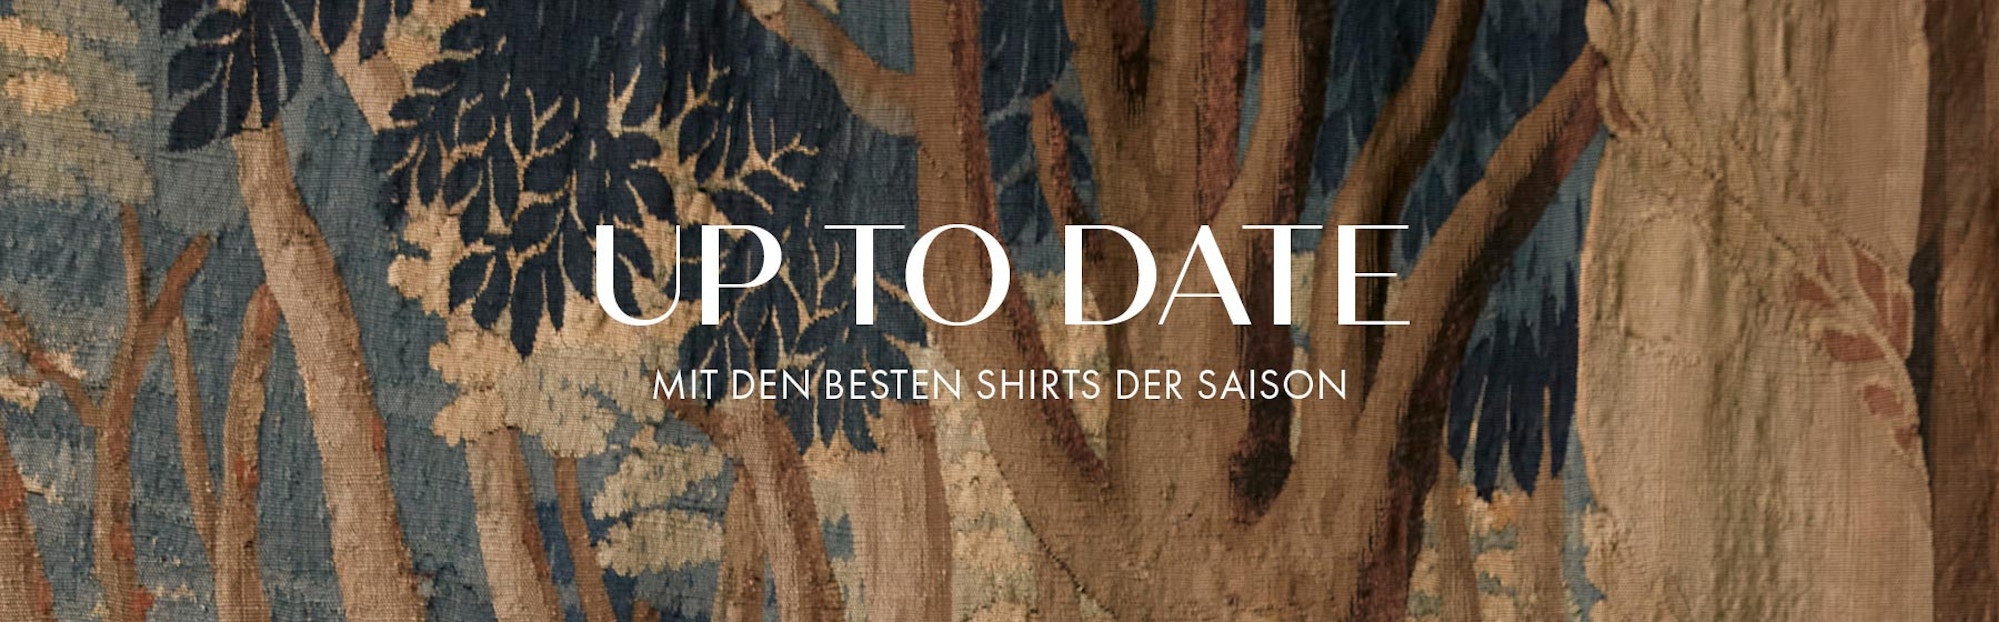 Up to Date - Mit den besten Shirts der Saison | Seidensticker